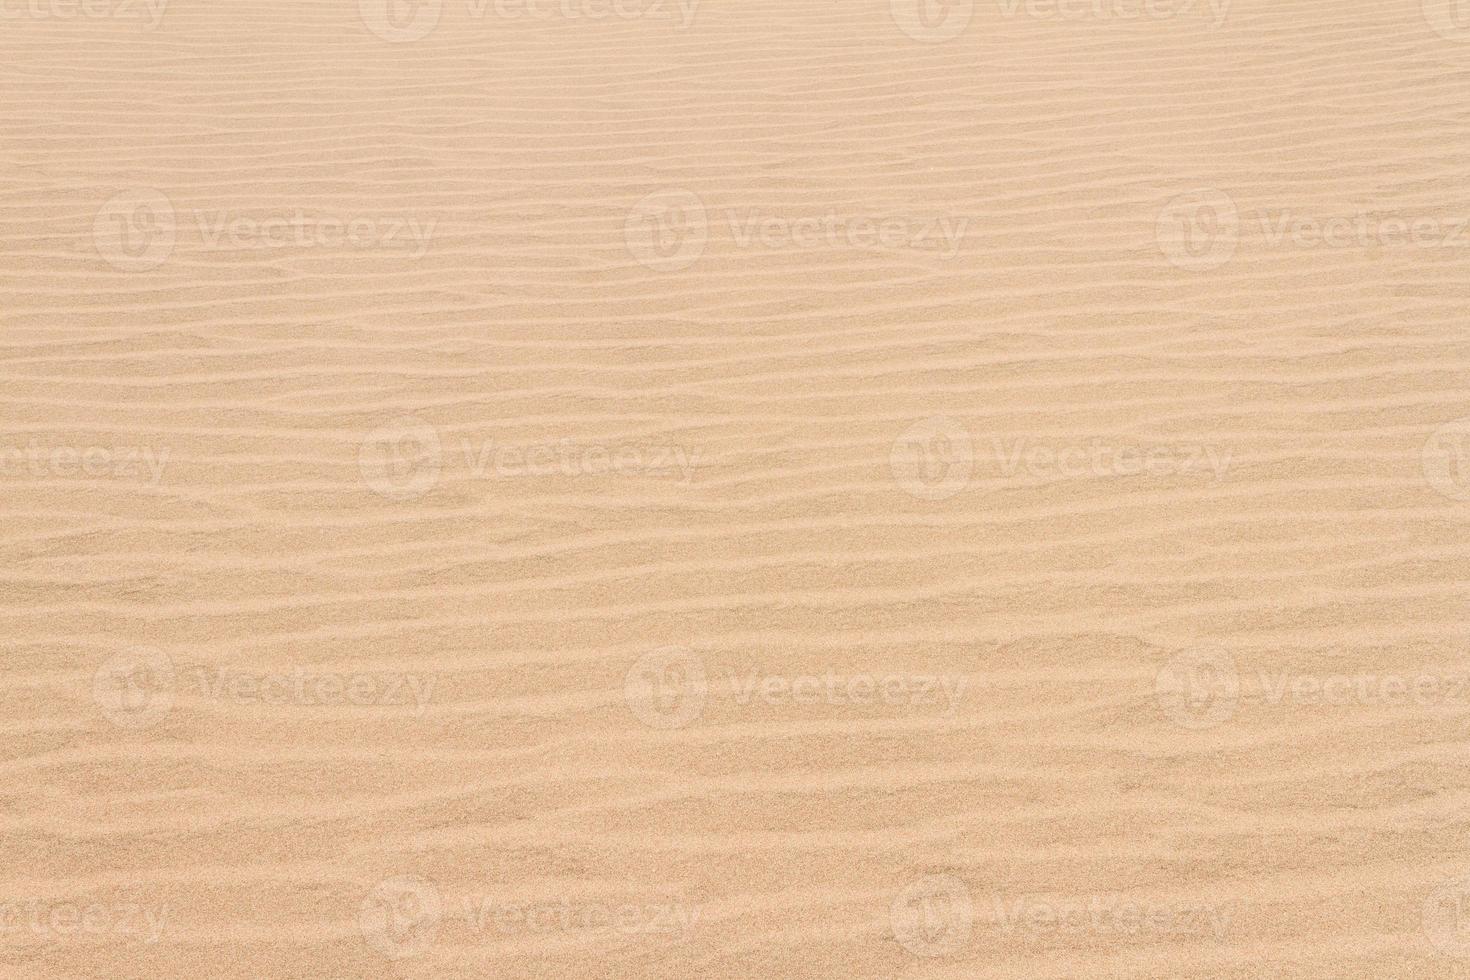 geabstraheerde zandduinlijnen foto